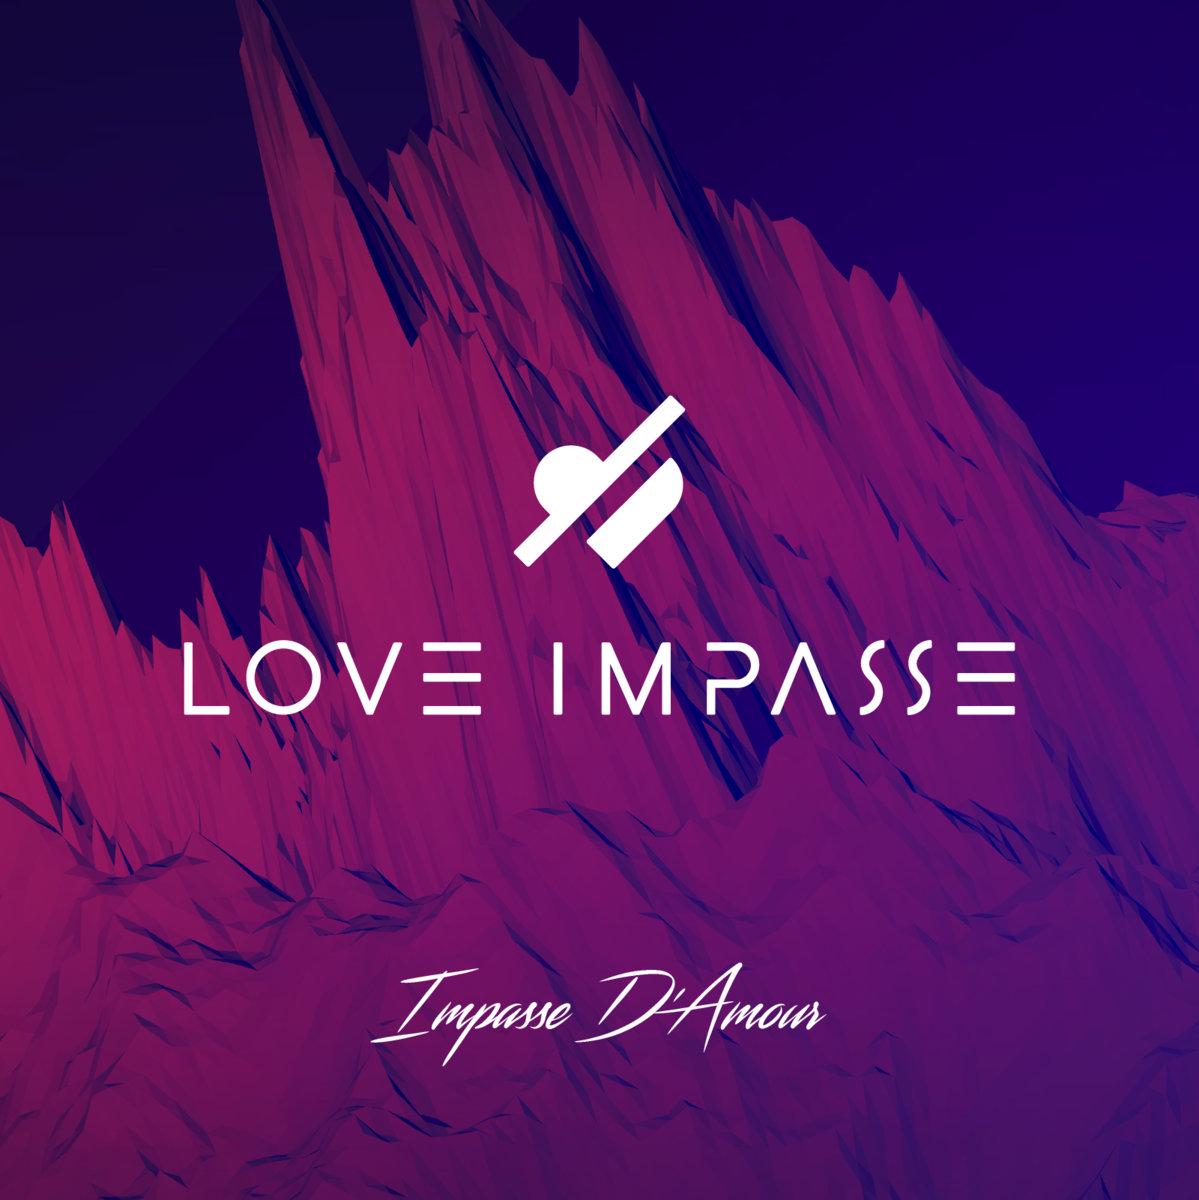 Love Impasse